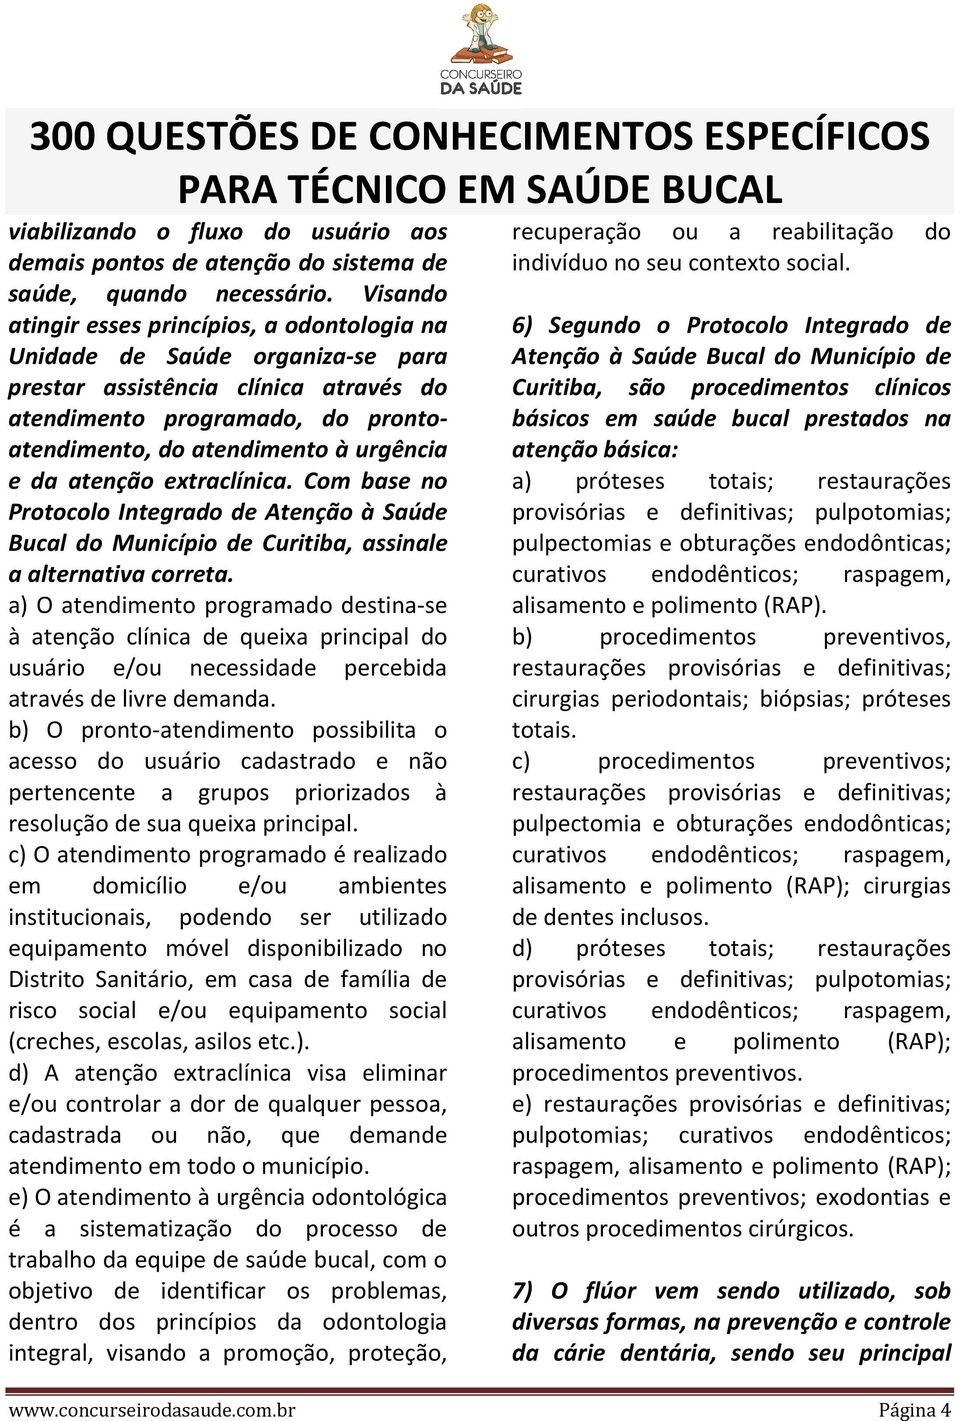 da atenção extraclínica. Com base no Protocolo Integrado de Atenção à Saúde Bucal do Município de Curitiba, assinale a alternativa correta.